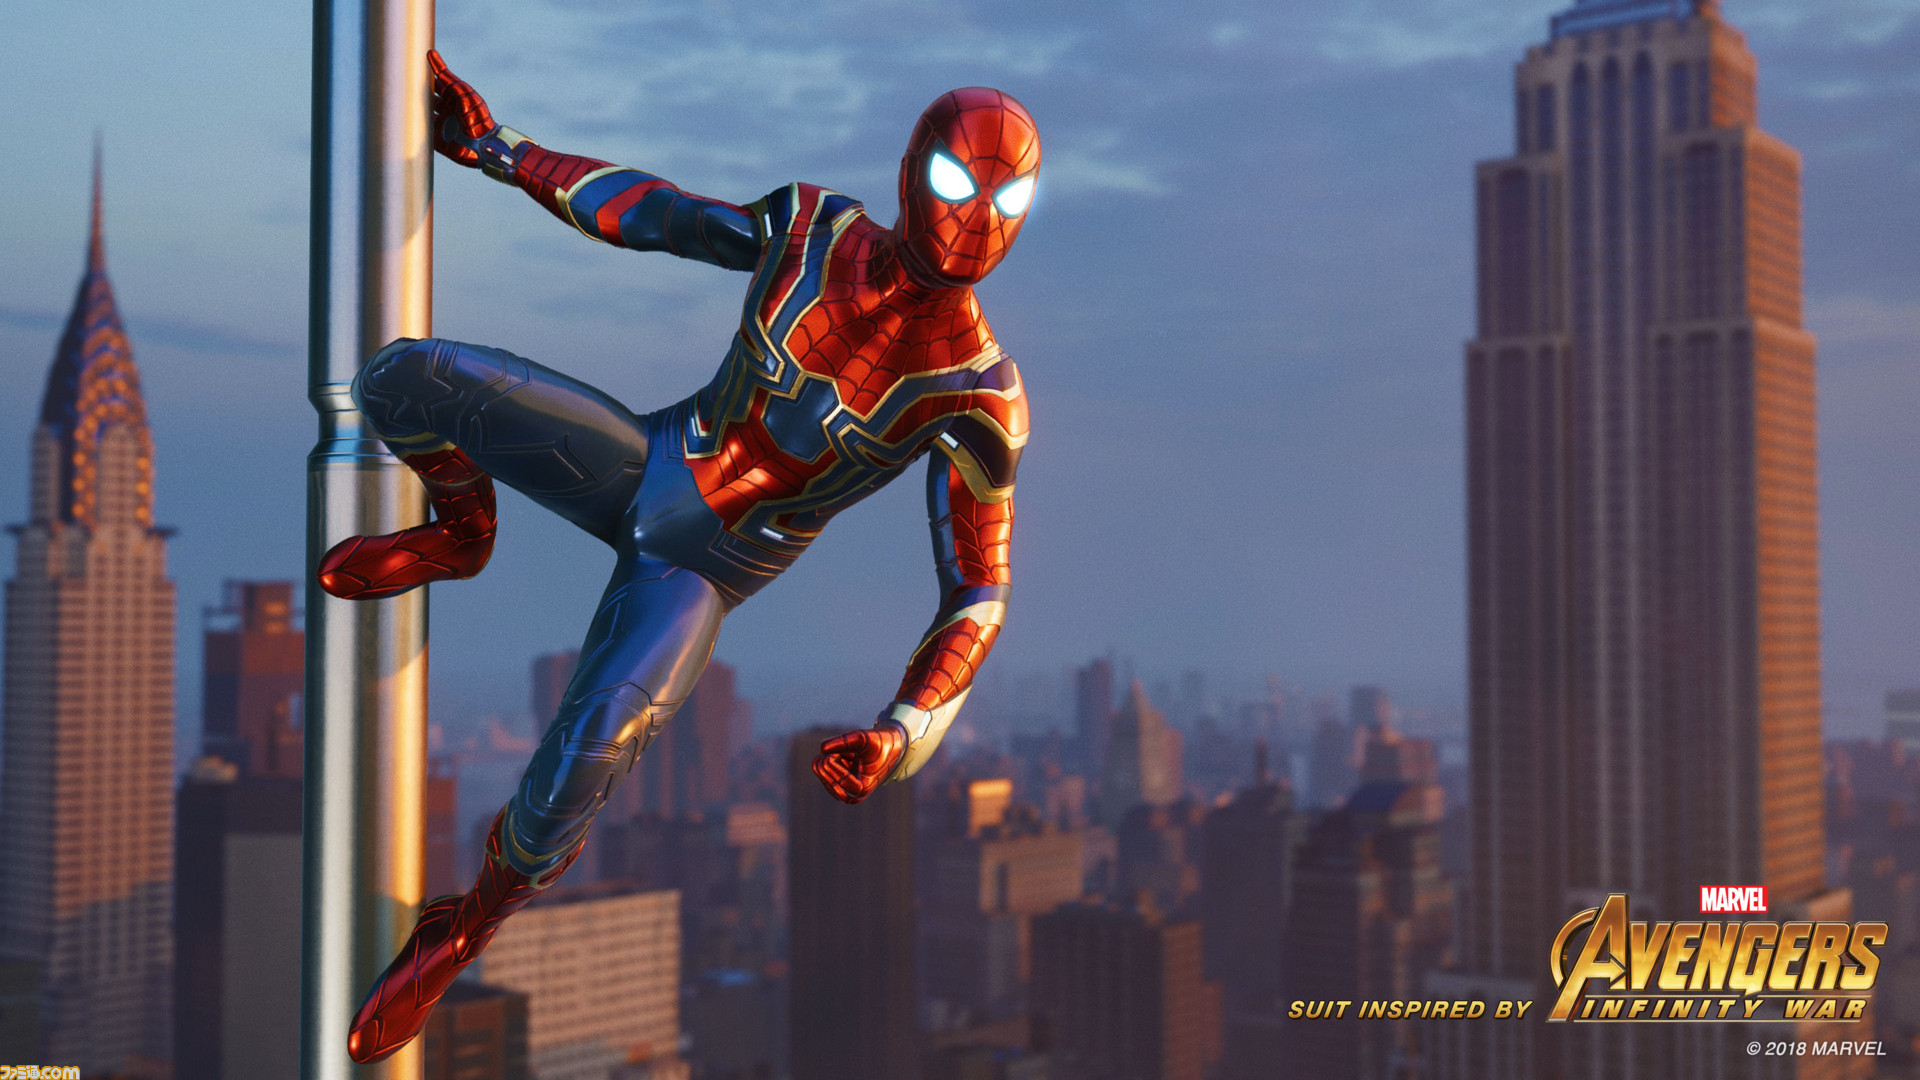 未開封 PS4 Marvel's Spider-Man スパイダーマン